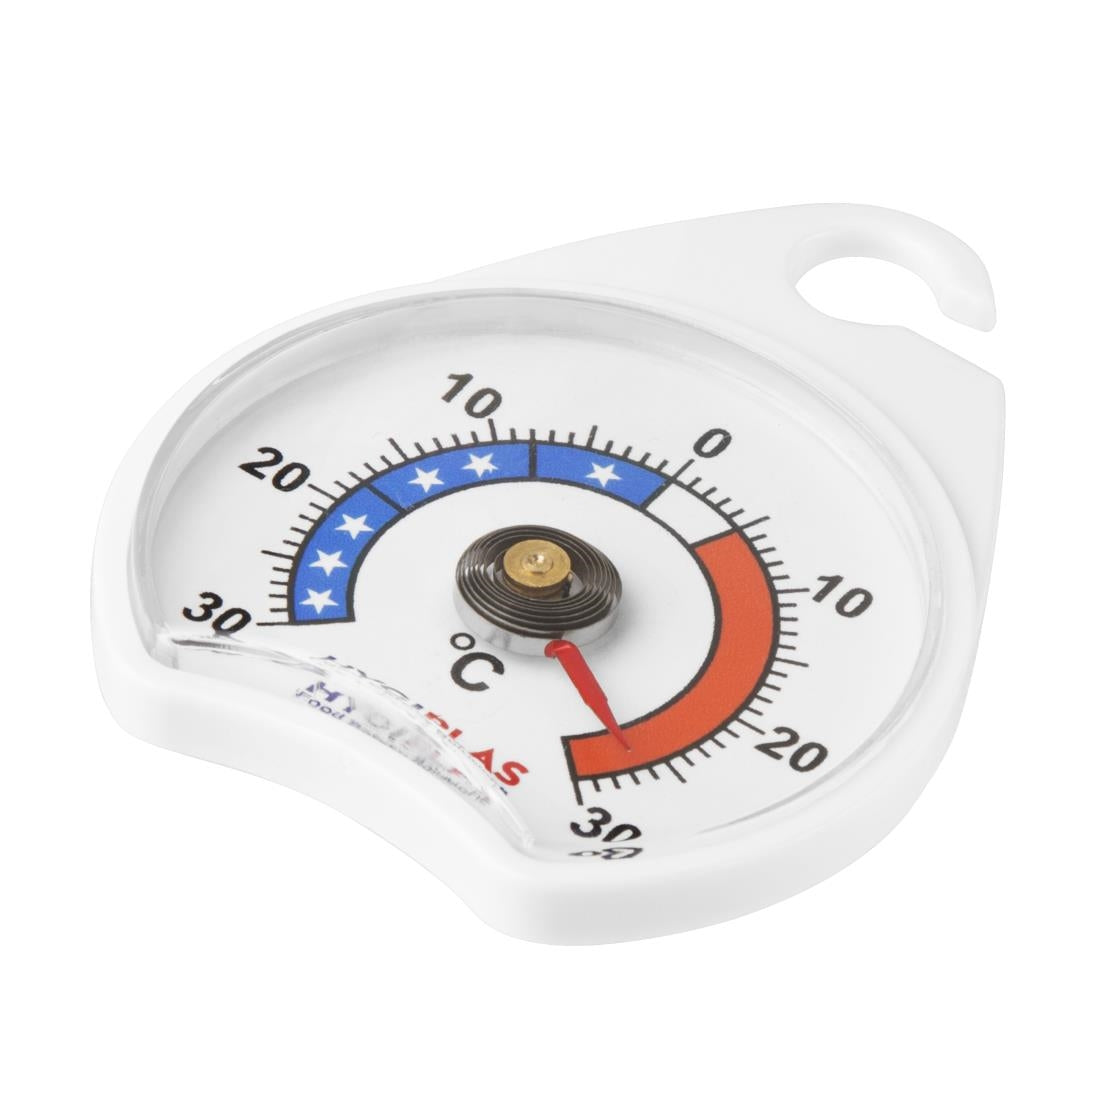 EDLP - Hygiplas Dial Freezer Thermometer